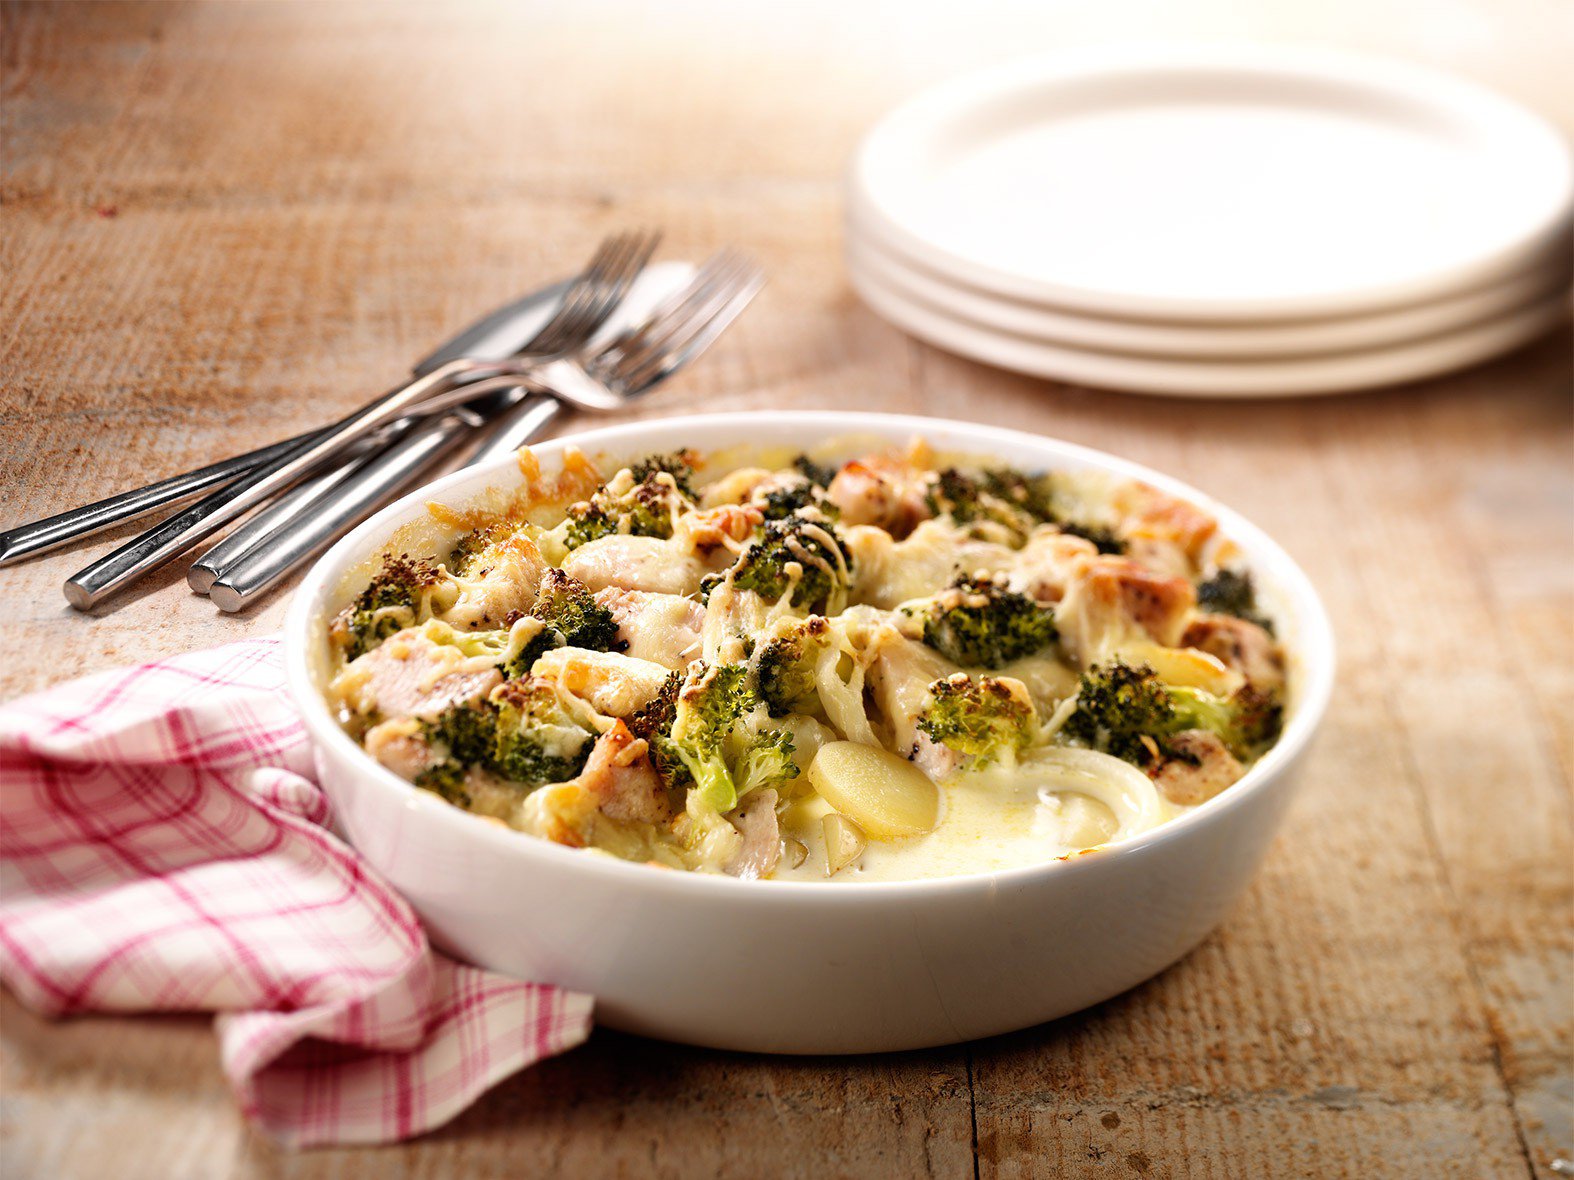 Romig aardappelstoofpotje met kip en broccoli